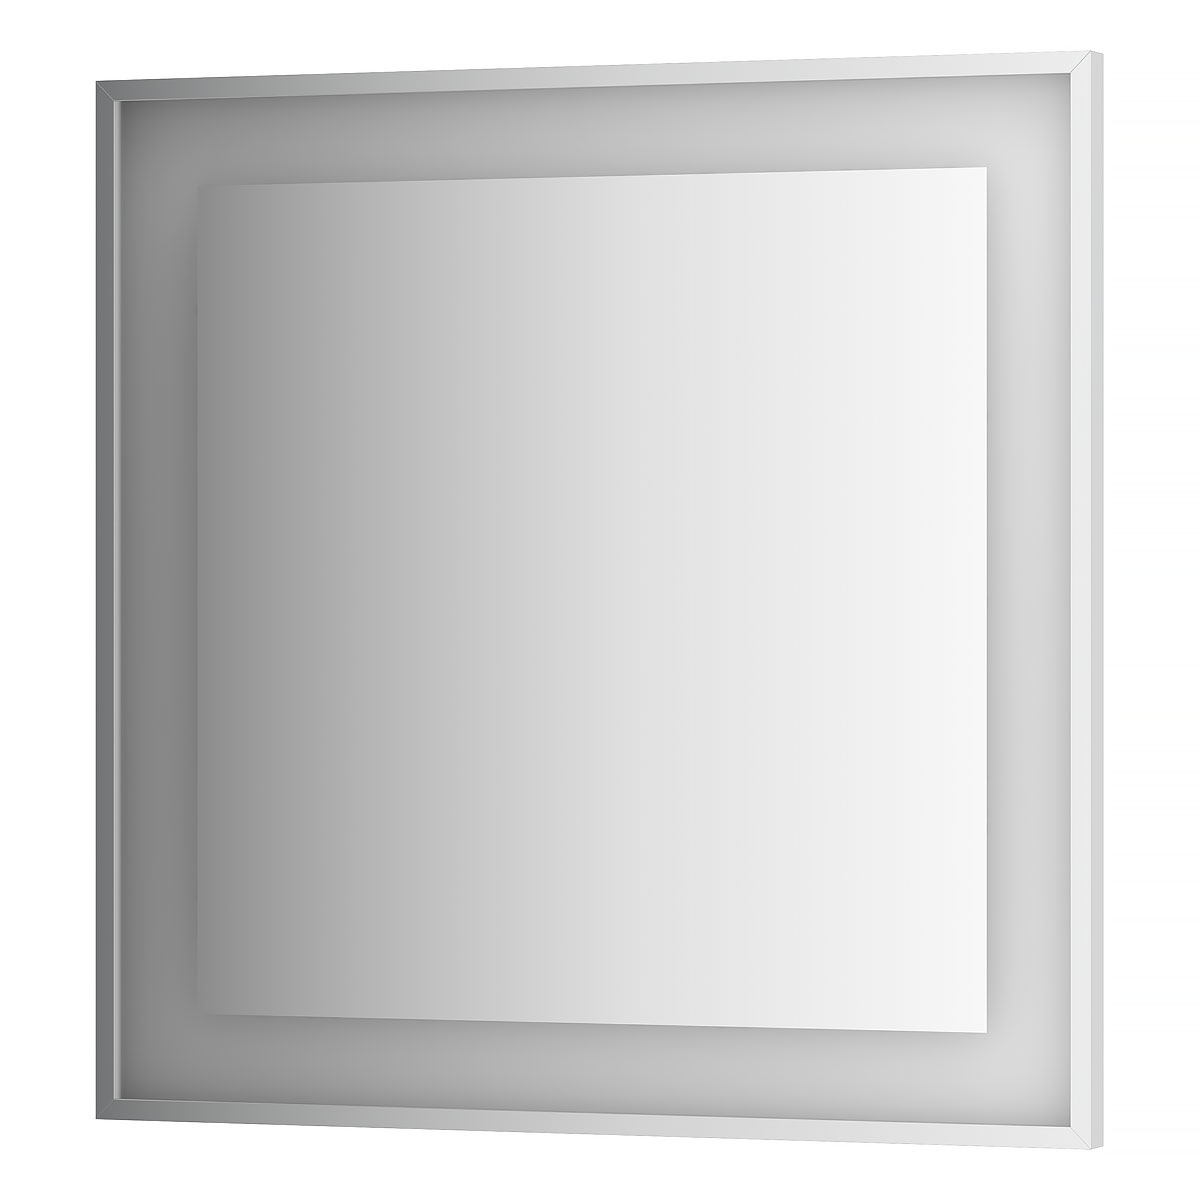 Зеркало в багетной раме со встроенной Led-подсветкой Evoform BY 2211, 90х90 3000 К зеркало evoform в багетной раме 70х70см bx 0662 bx 0662